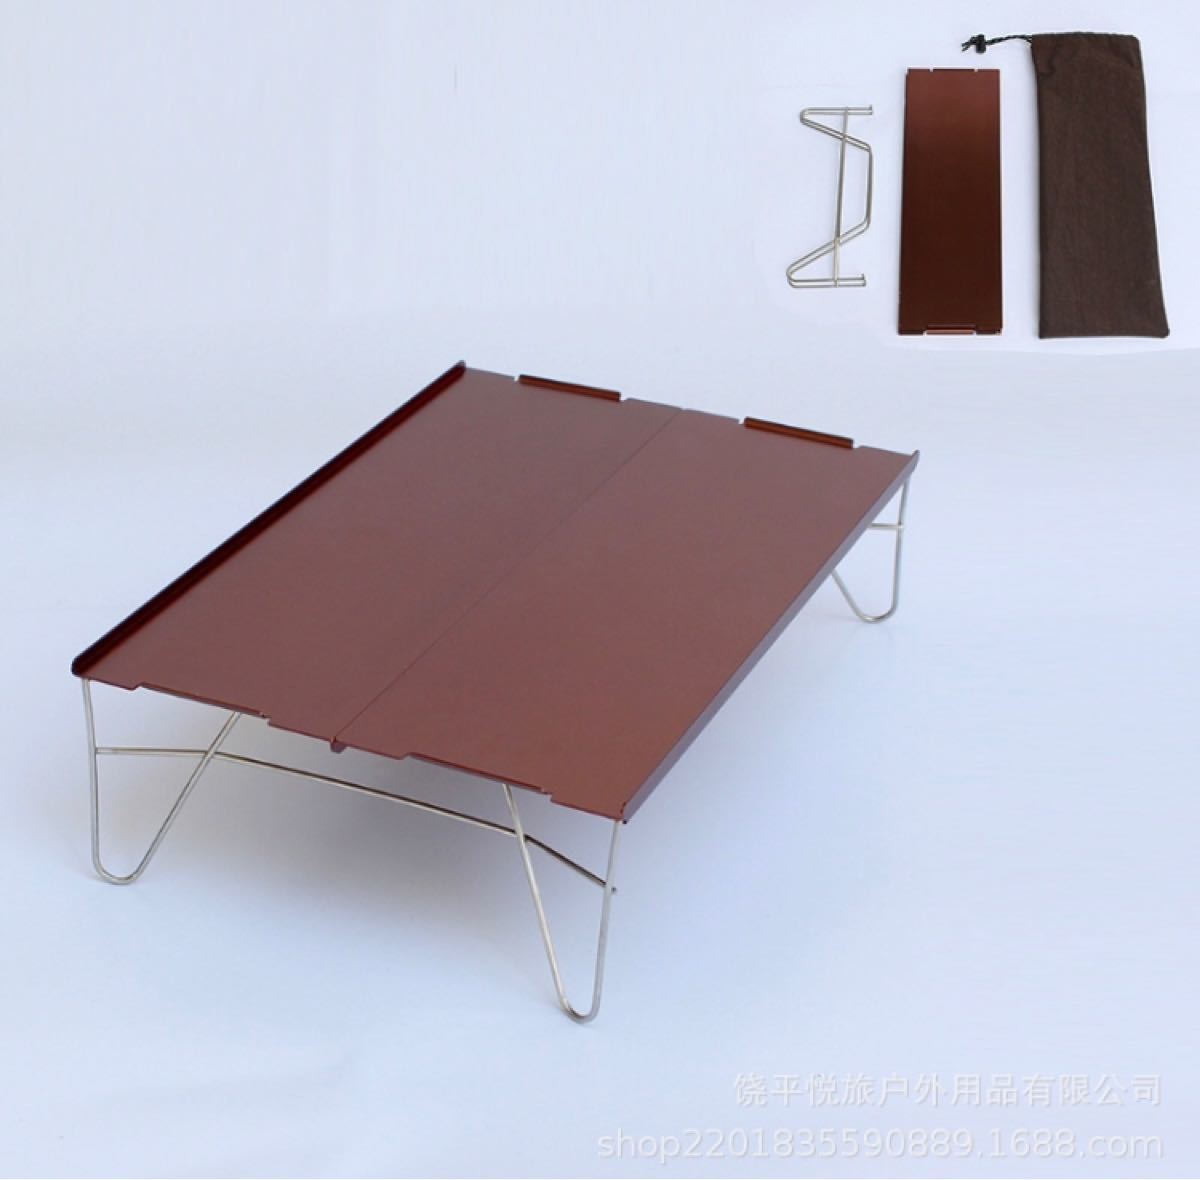 テーブル アルミ製 アウトドアテーブル ブラウン 組み立て 超軽量 コンパクト ミニテーブル 折りたたみ